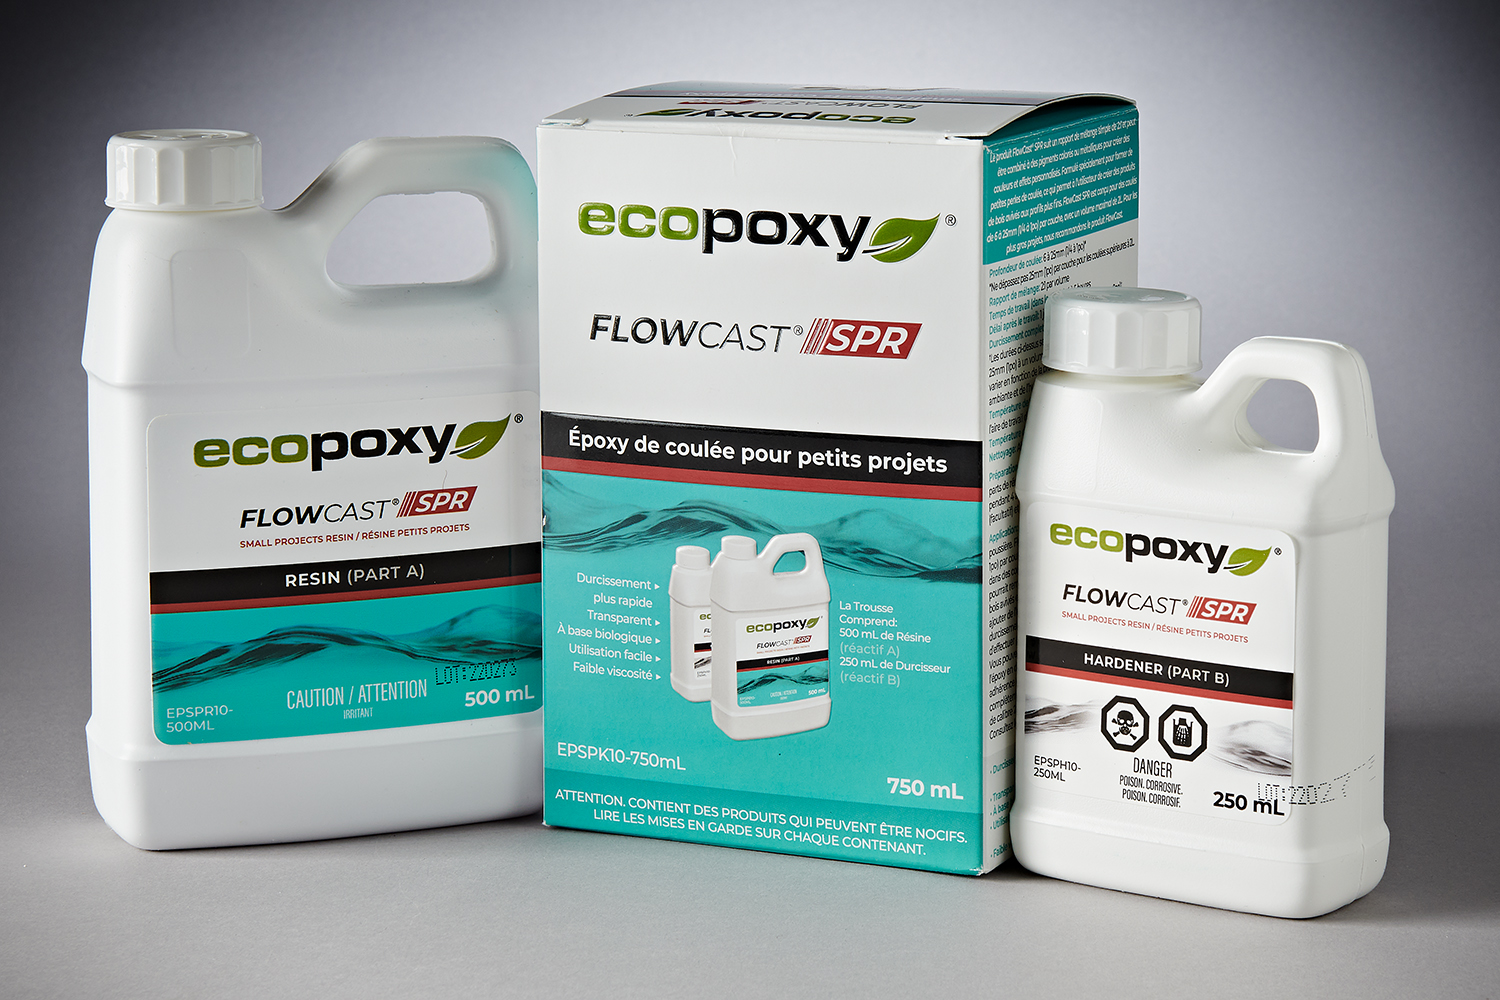 ECOPoxy Flowcast (60 Liter) - Midwest Millworx